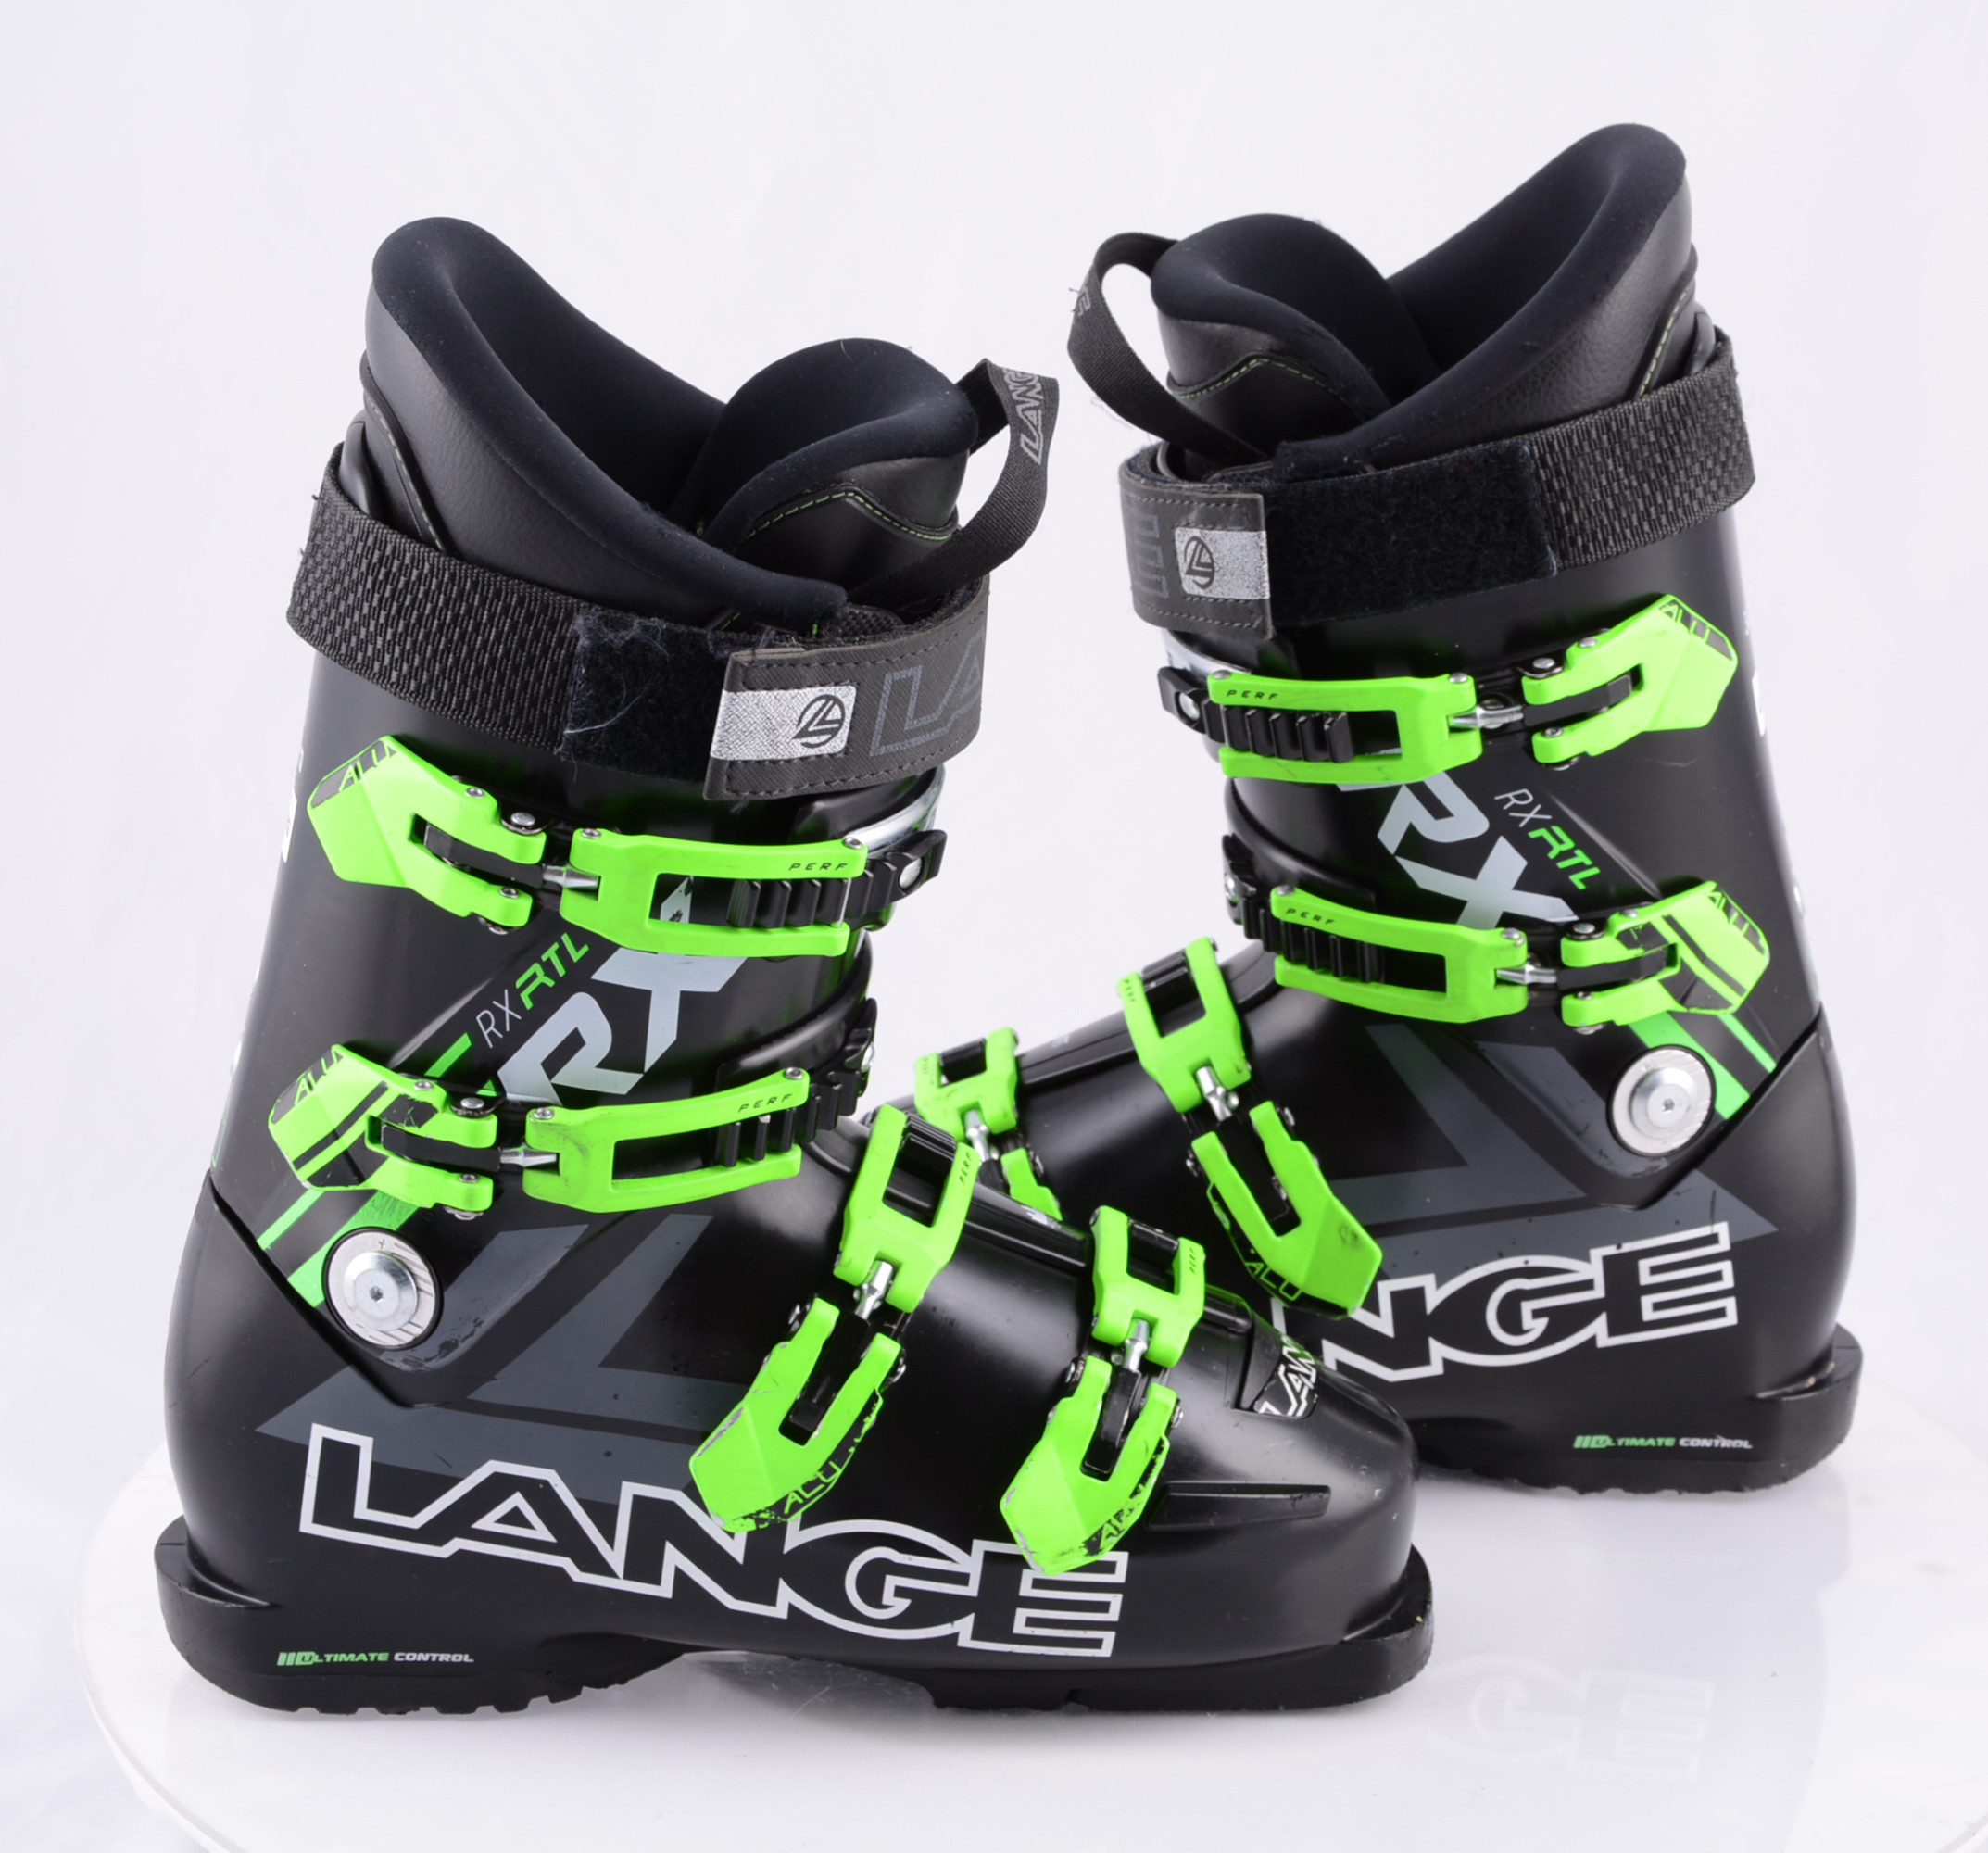 ski boots RX BLACK/green, ULTIMATE FLEX adj. ALU, CONTROL fit - Mardosport.com